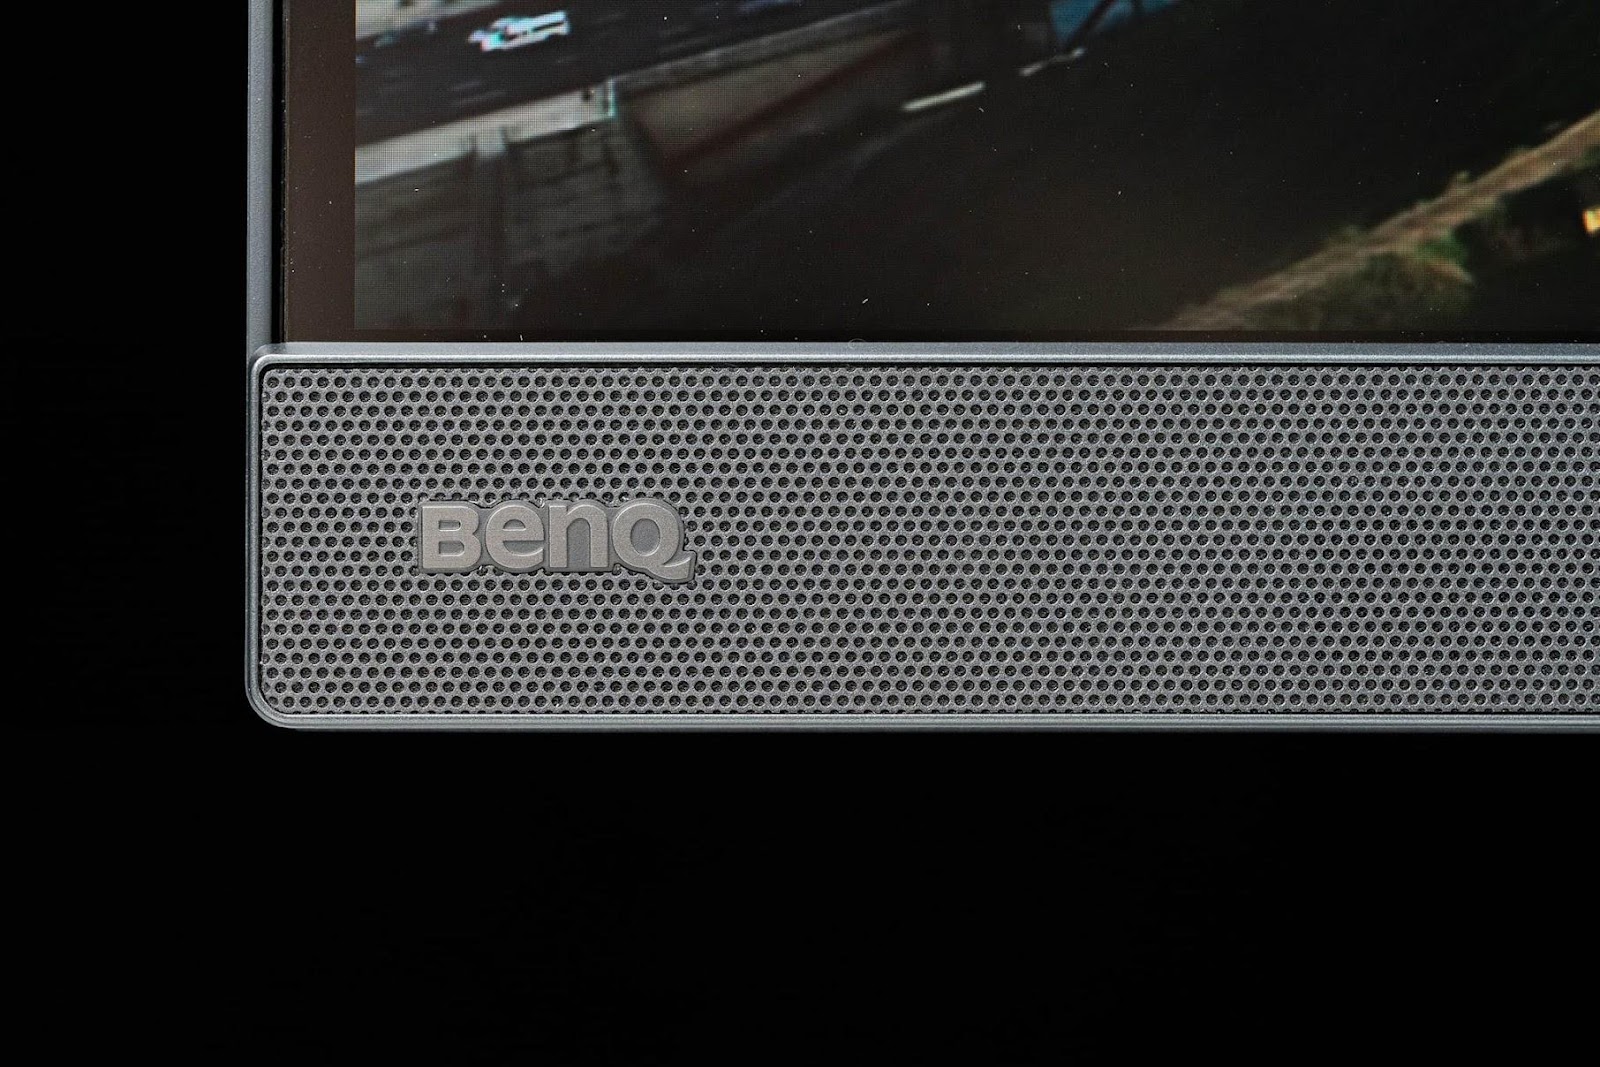 BenQ MOBIUZ EX3210U 電競螢幕 開箱心得 & 螢幕色彩模式量測 簡單分享 - 4K, 4K HDR, benq, BenQMOBIUZ, Dolby, Dolby Vision, EX3210U, HDMI 2.1, HDR, HDR螢幕, MOBIUZ, PTT, 科技狗, 螢幕, 開箱, 開箱評測, 電競螢幕, 體驗 - 科技狗 3C DOG